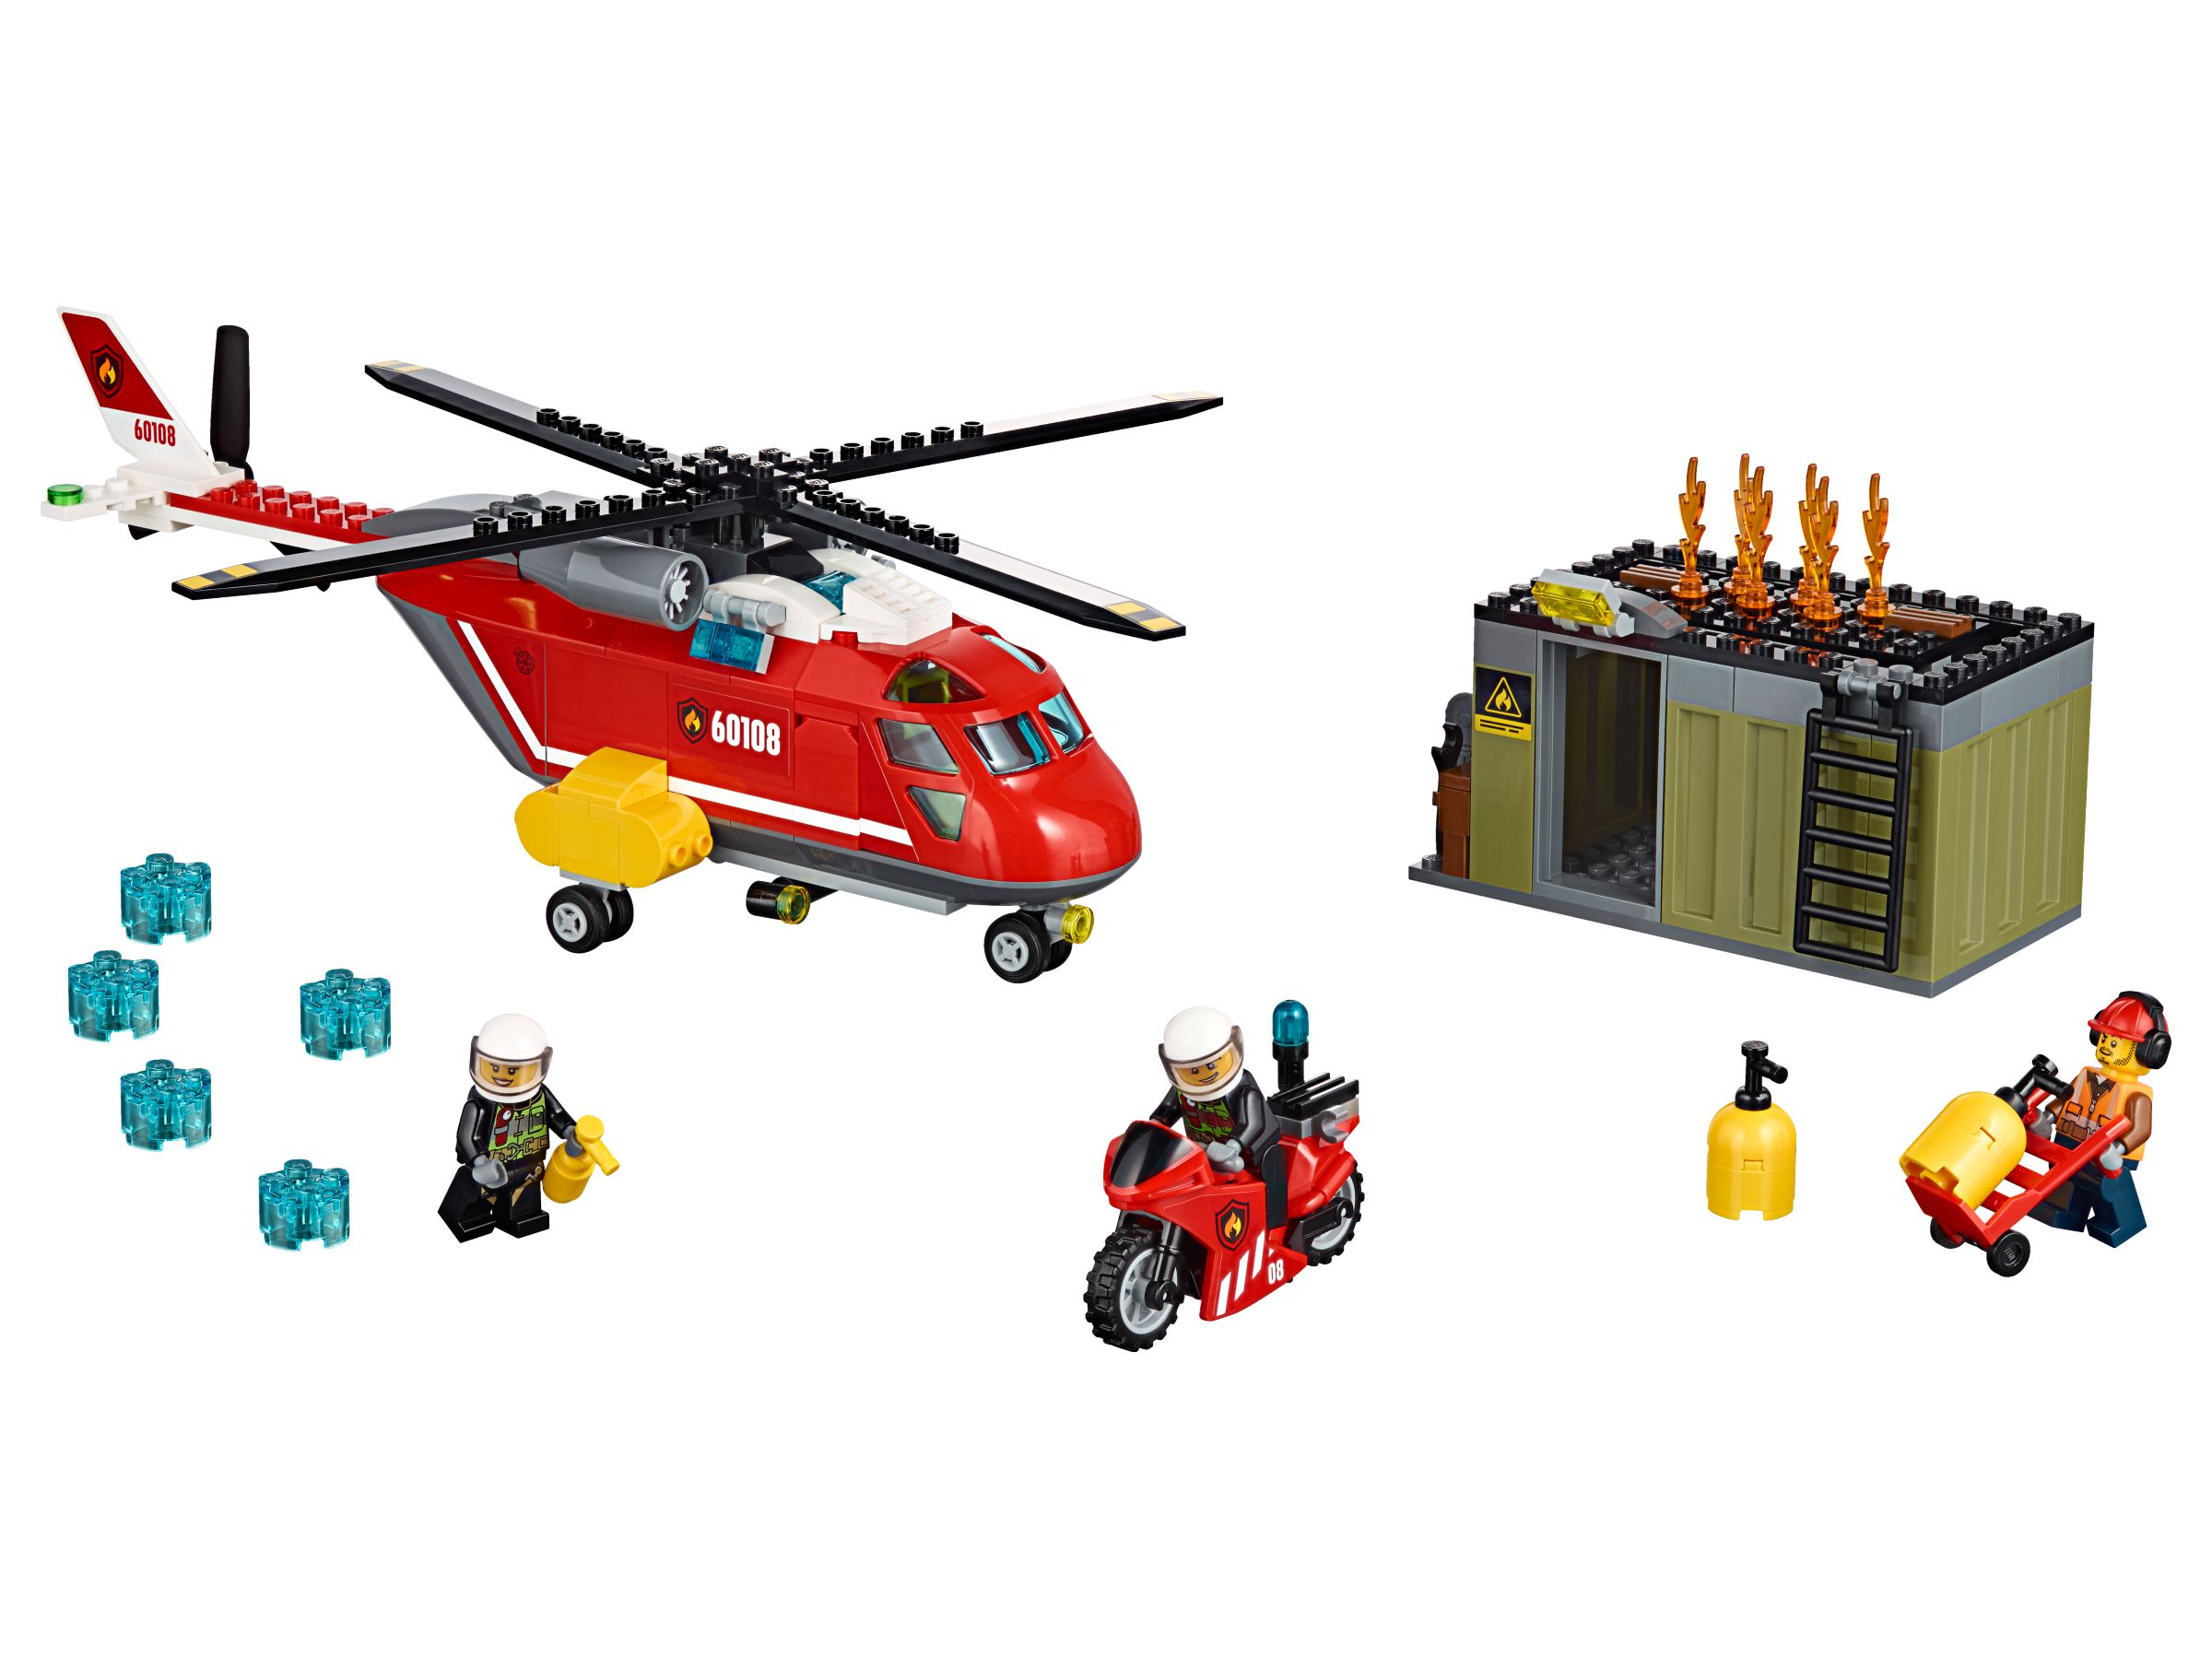 LEGO City 60108 Feuerwehr-Löscheinheit LEGO_60108.jpg